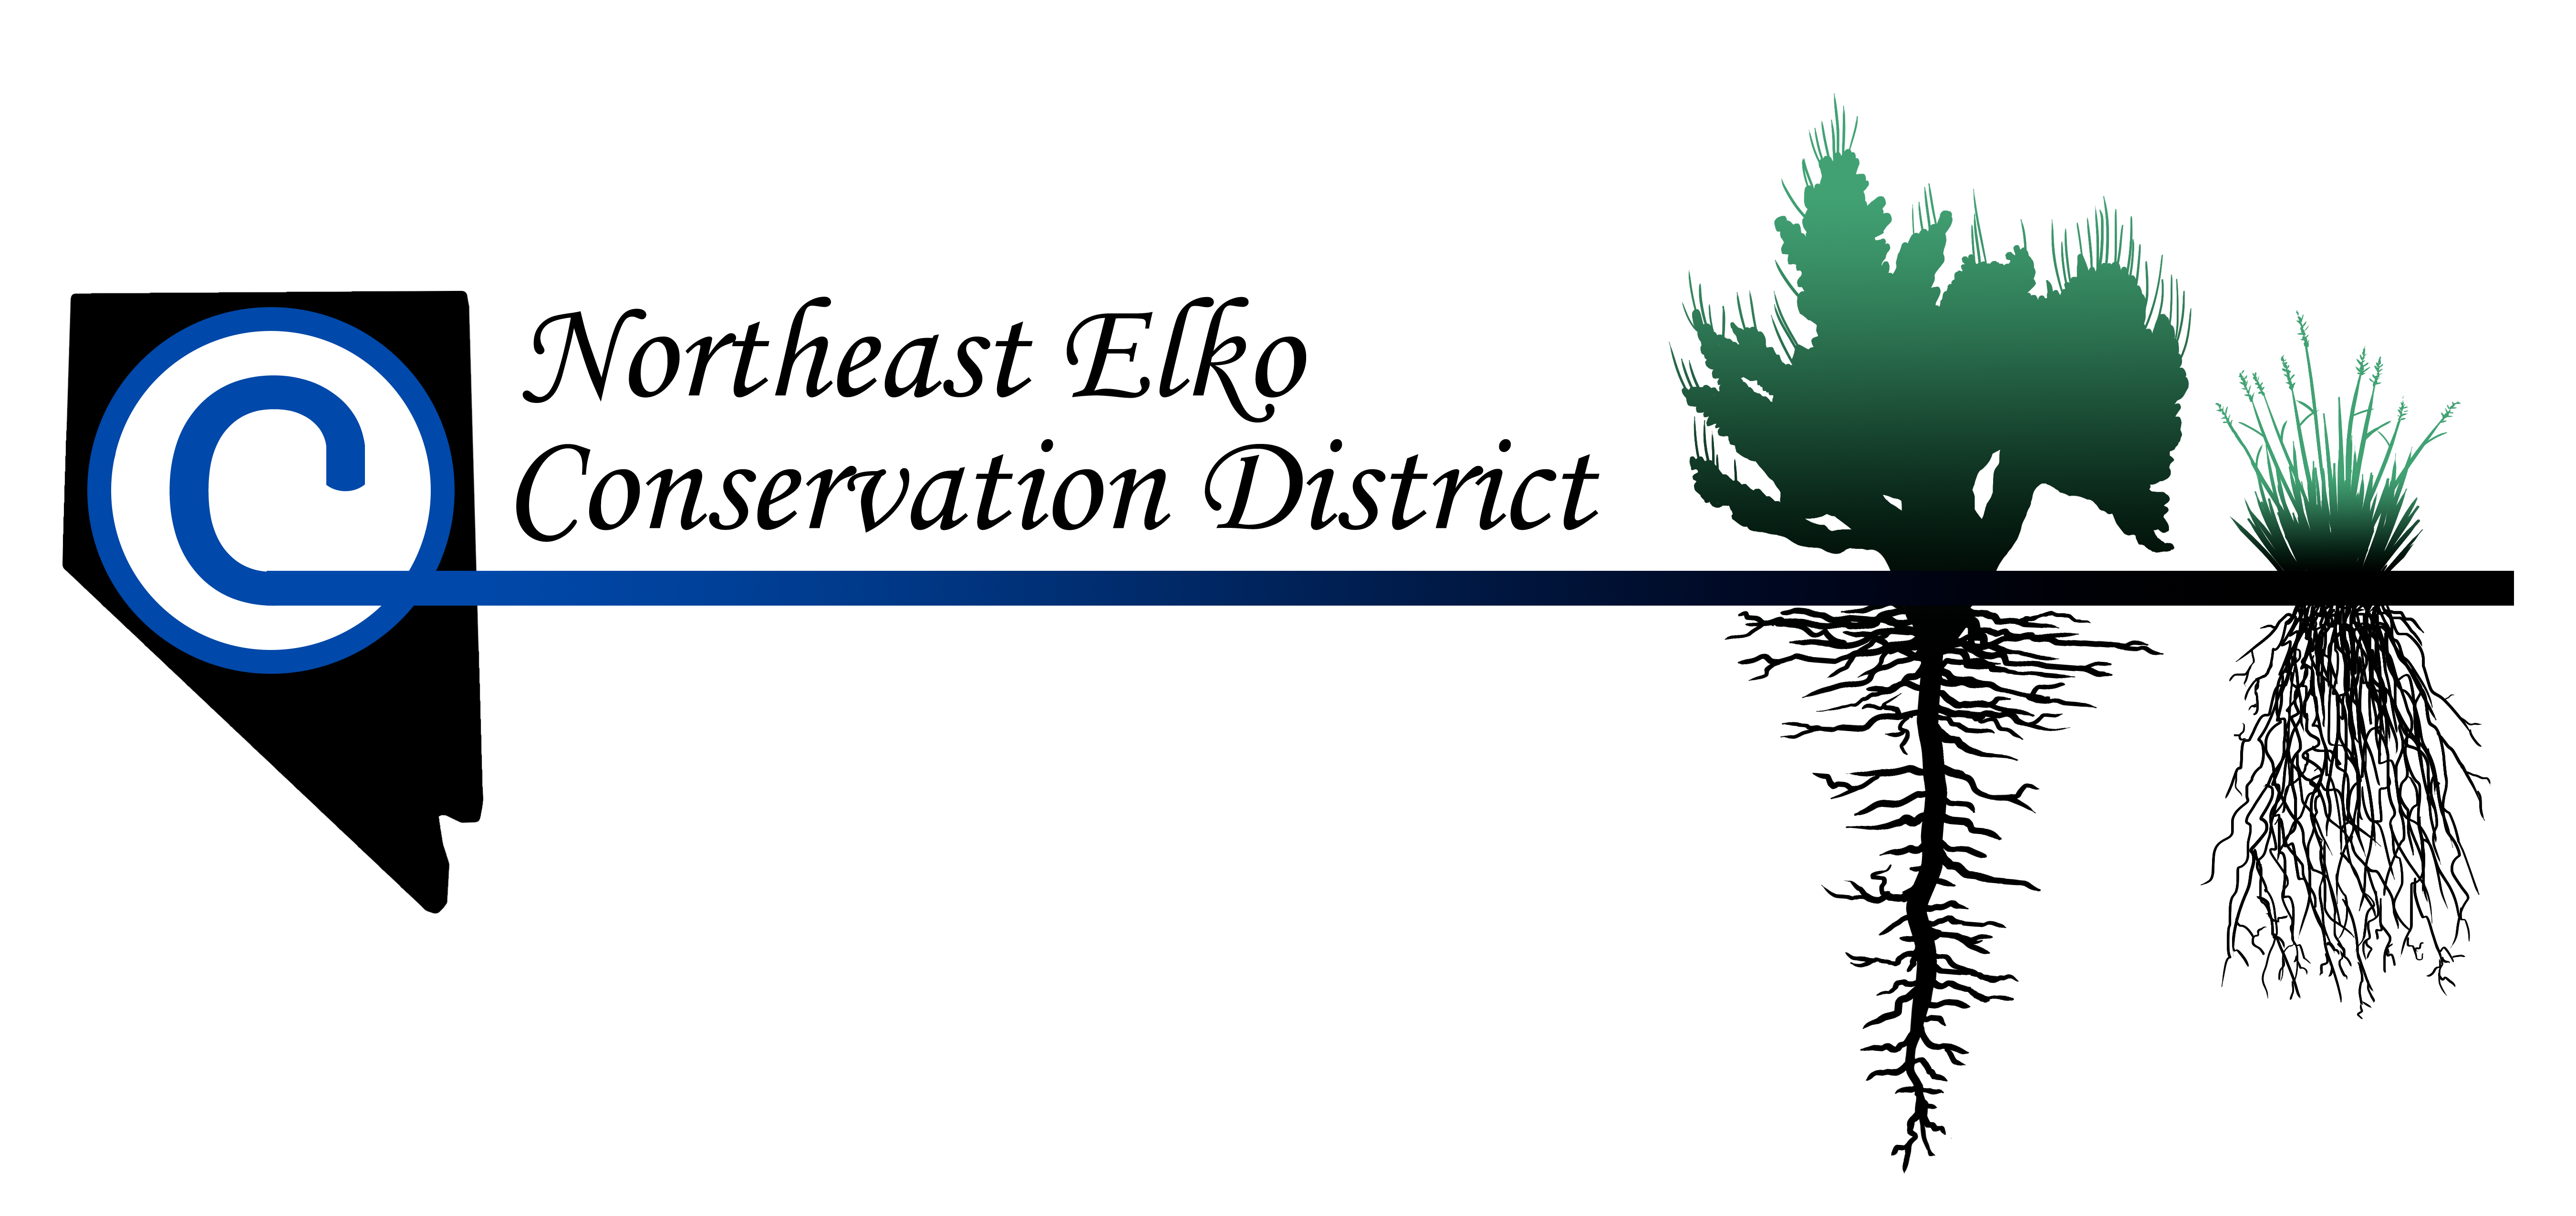 Northeast Elko Conservation District